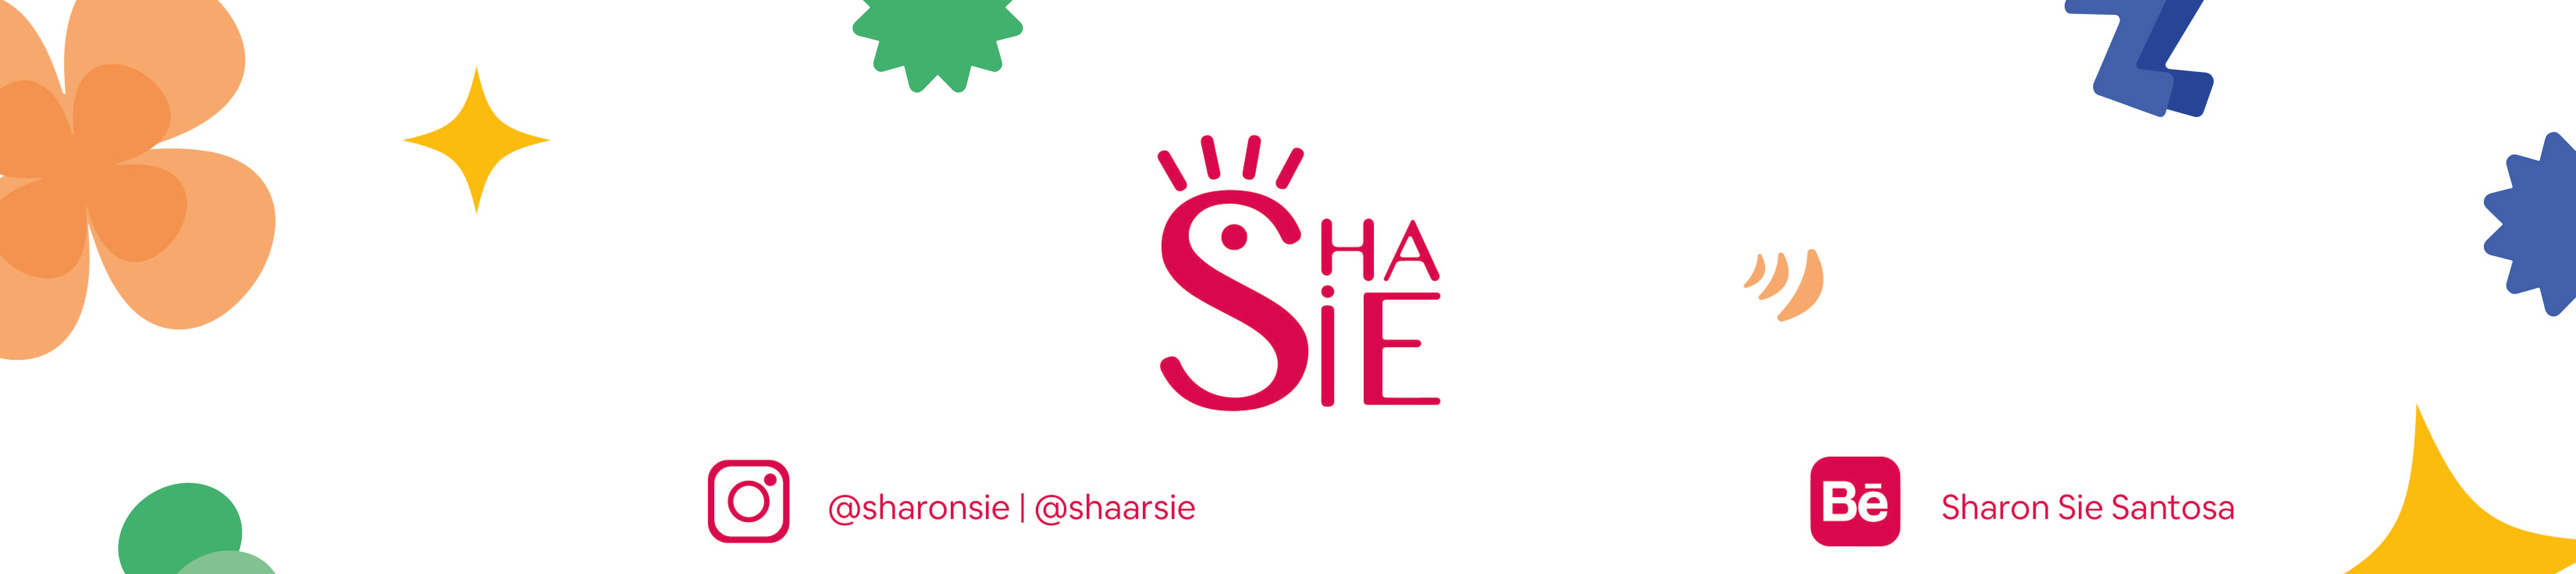 Sharon Sie Santosa's profile banner